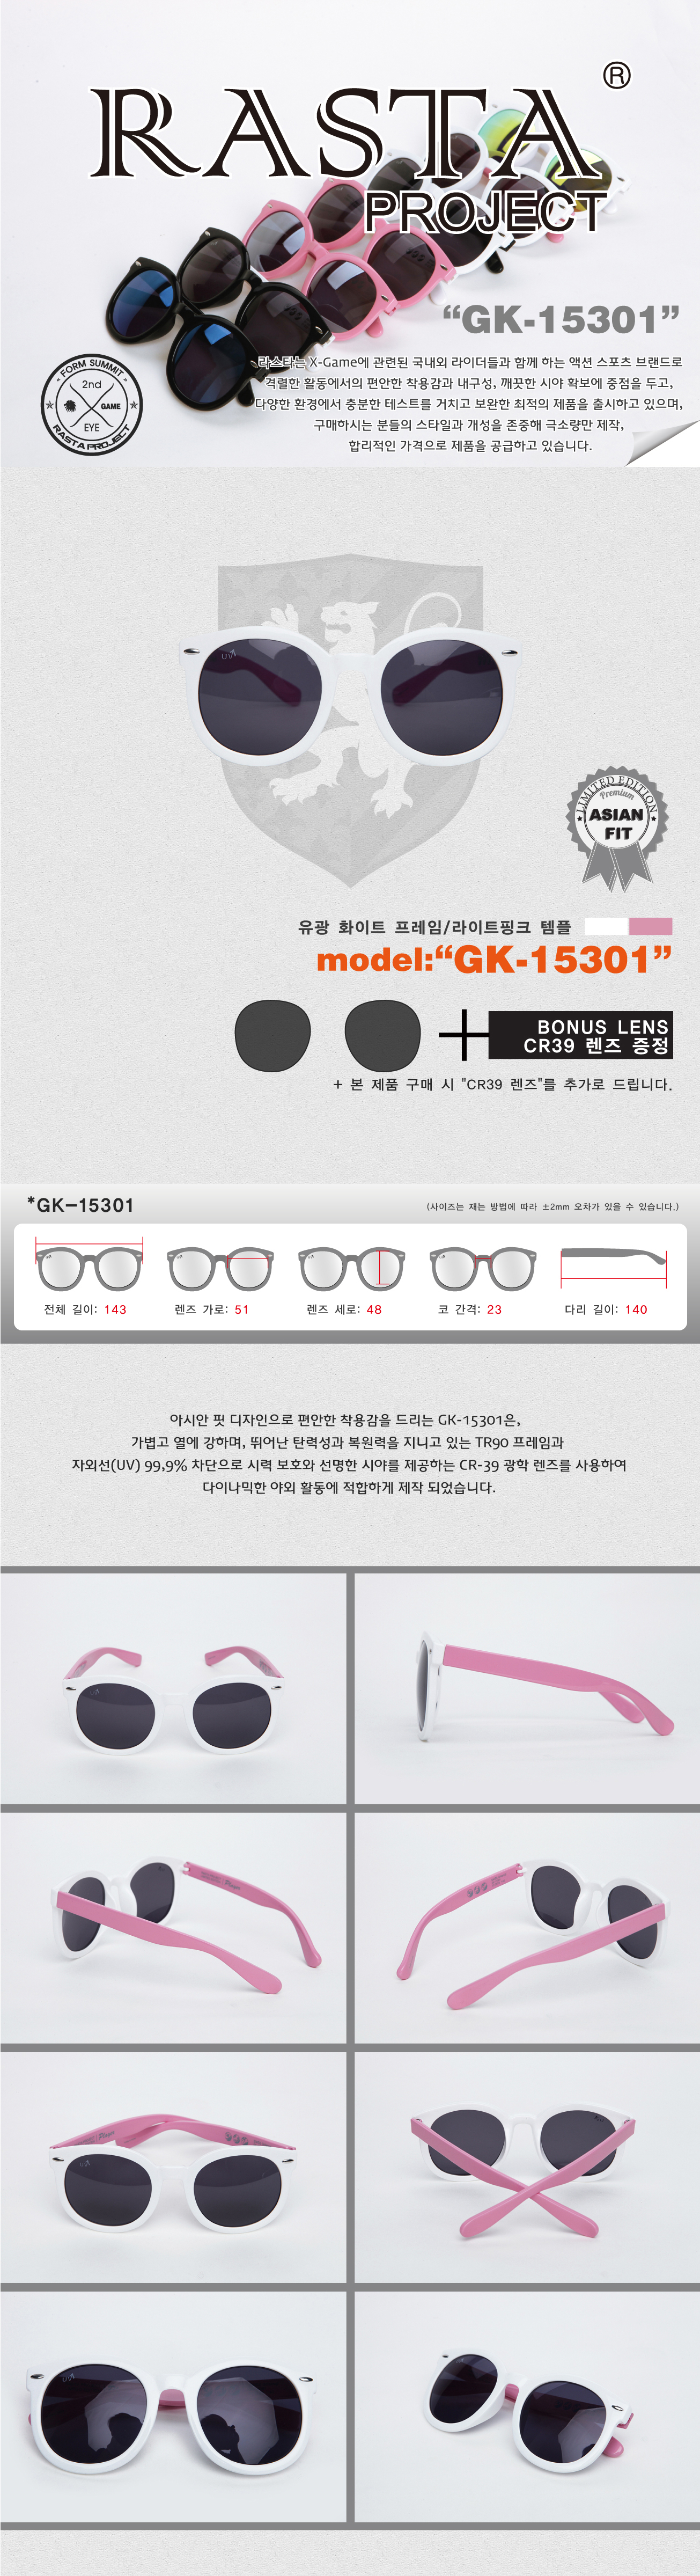 GK-15301 Gloss White/LightPink